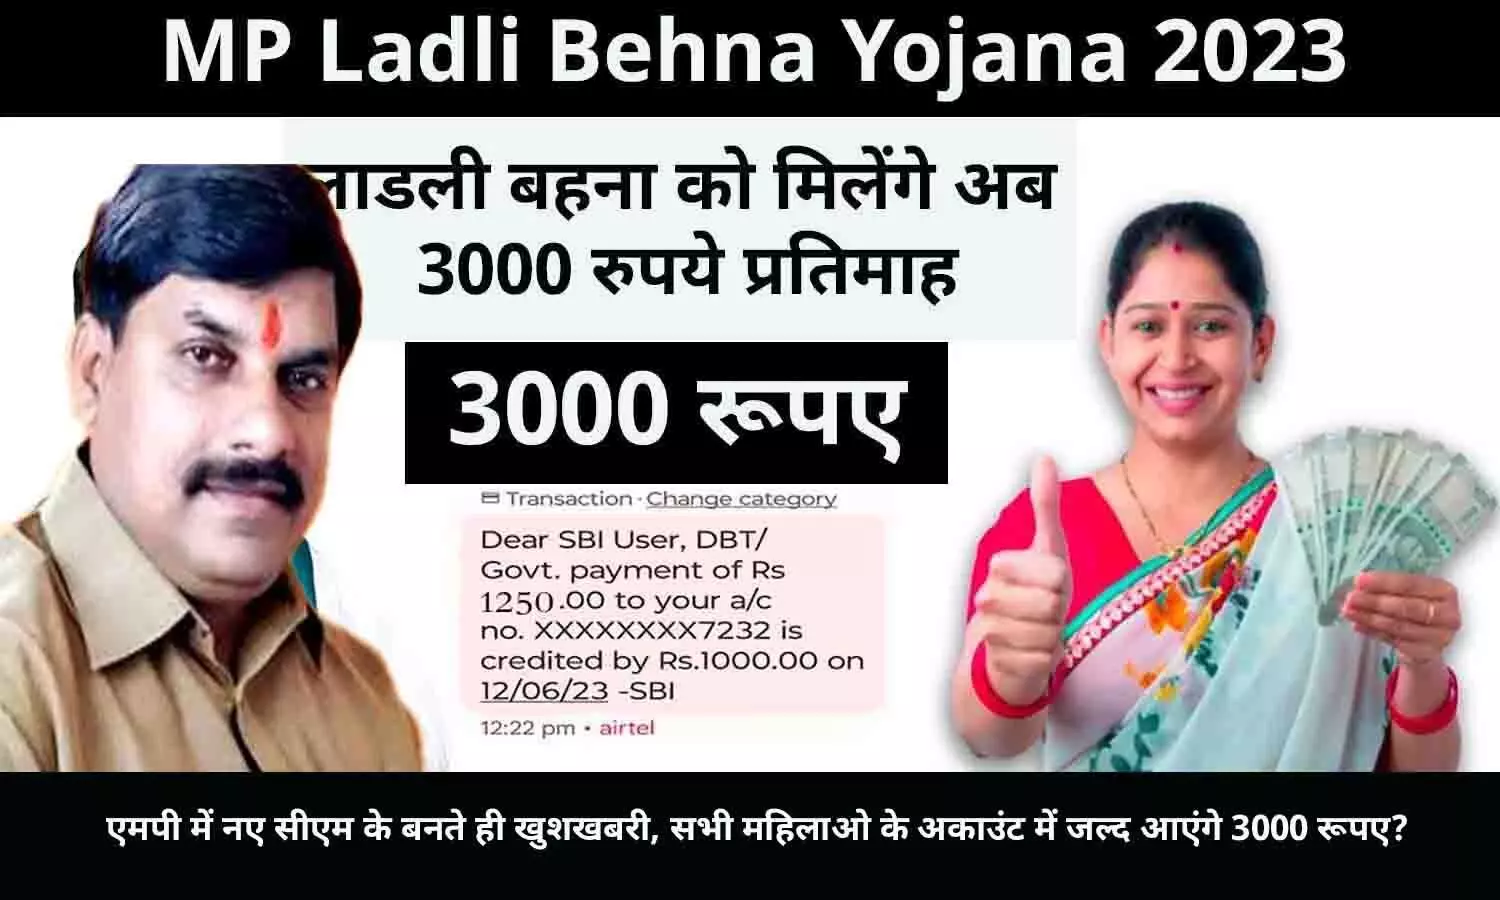 Ladli Behna Yojana In MP: एमपी में नए सीएम के बनते ही खुशखबरी, सभी महिलाओ के अकाउंट में जल्द आएंगे 3000 रूपए?